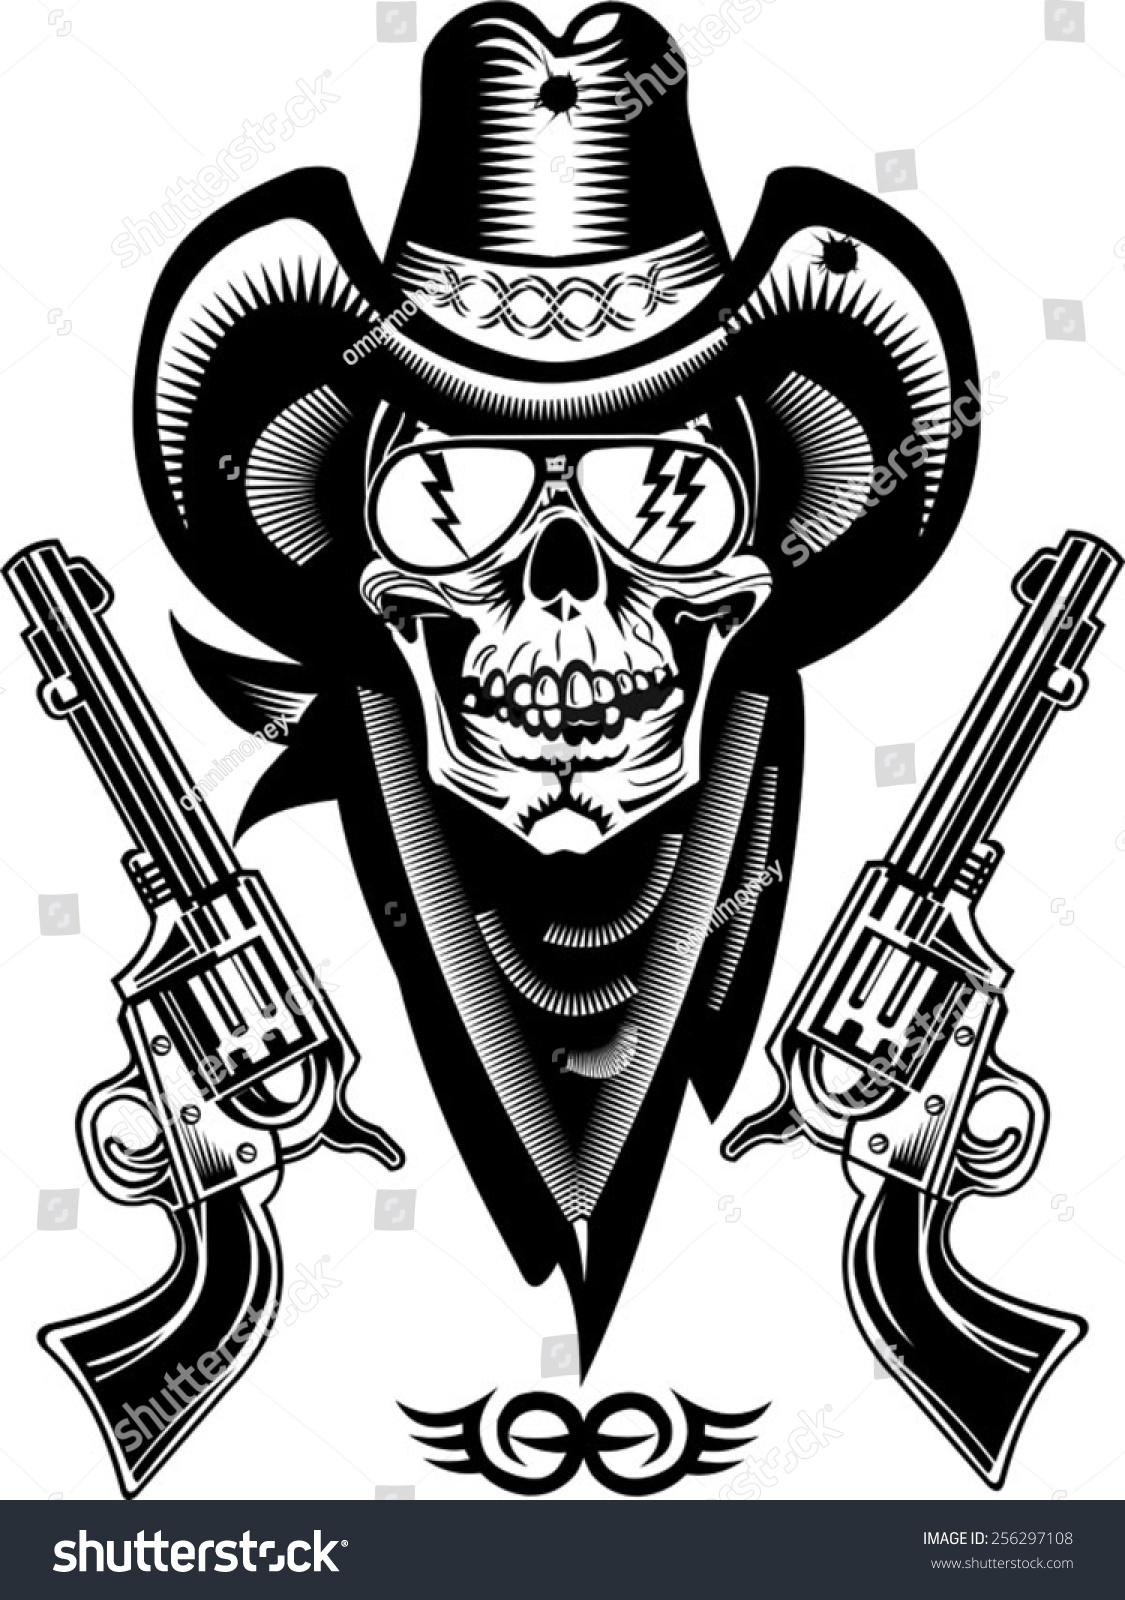 Cowboy Skull Revolver Stock Vector 256297108 - Shutterstock